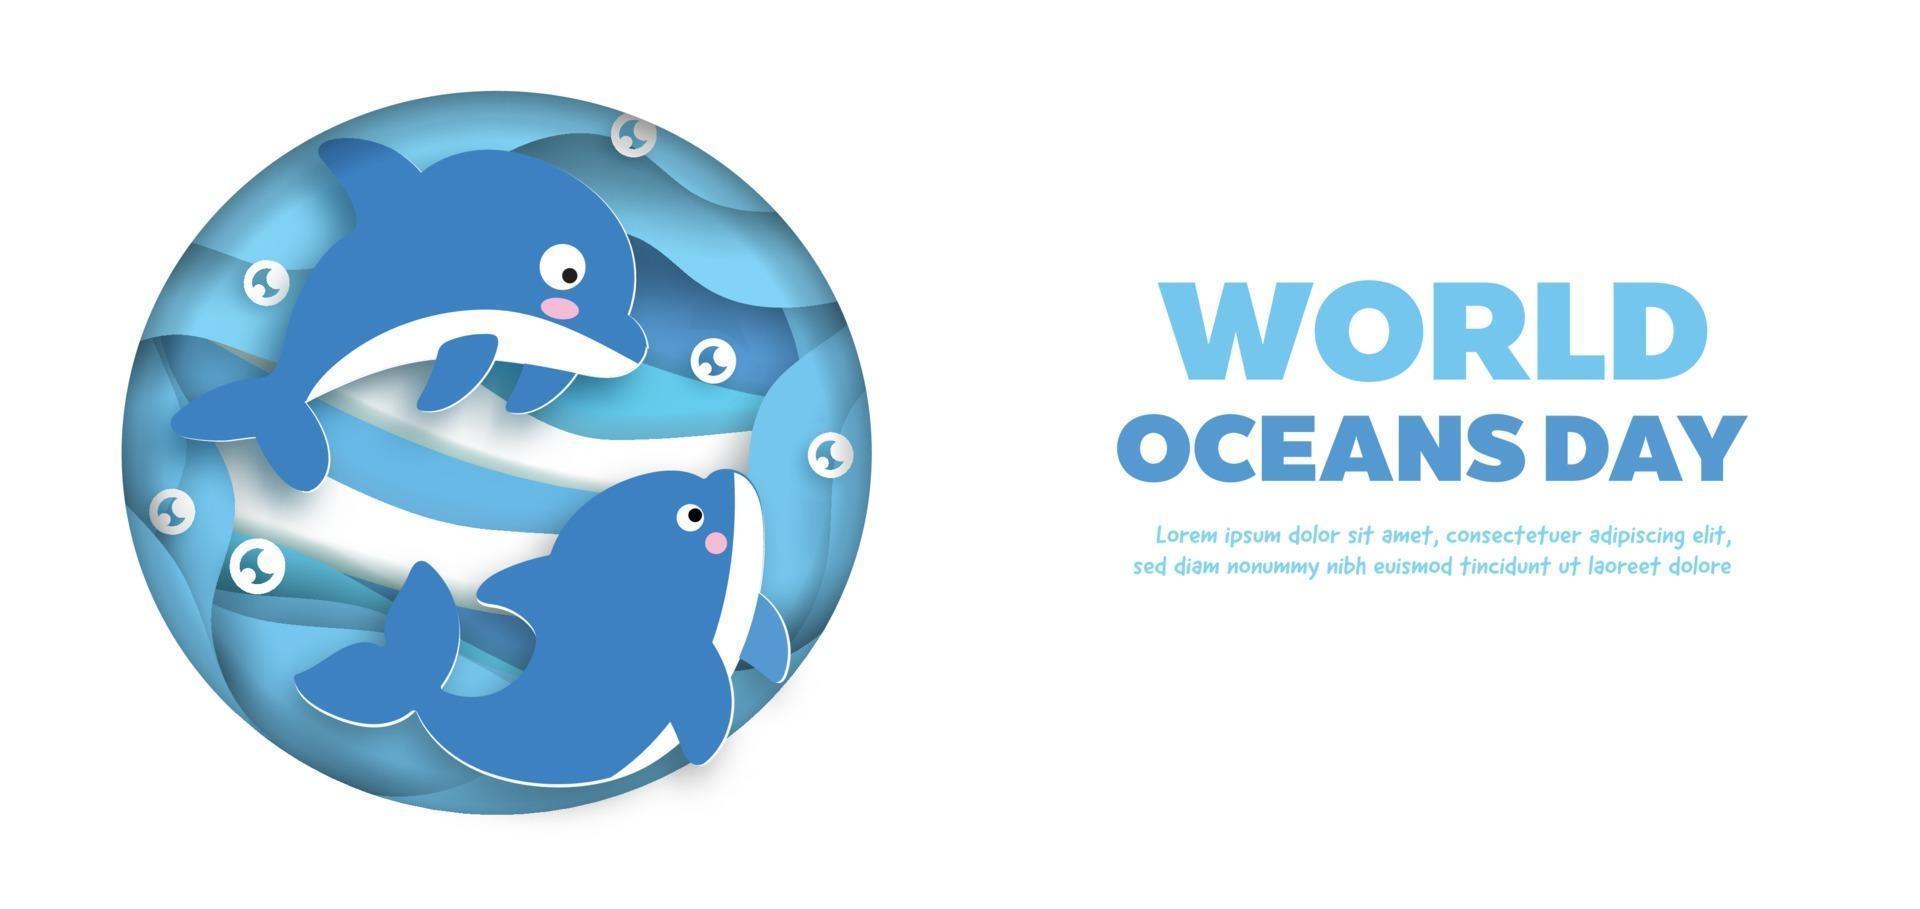 pancarta del día mundial de los océanos con un lindo delfín en estilo de corte de papel. vector